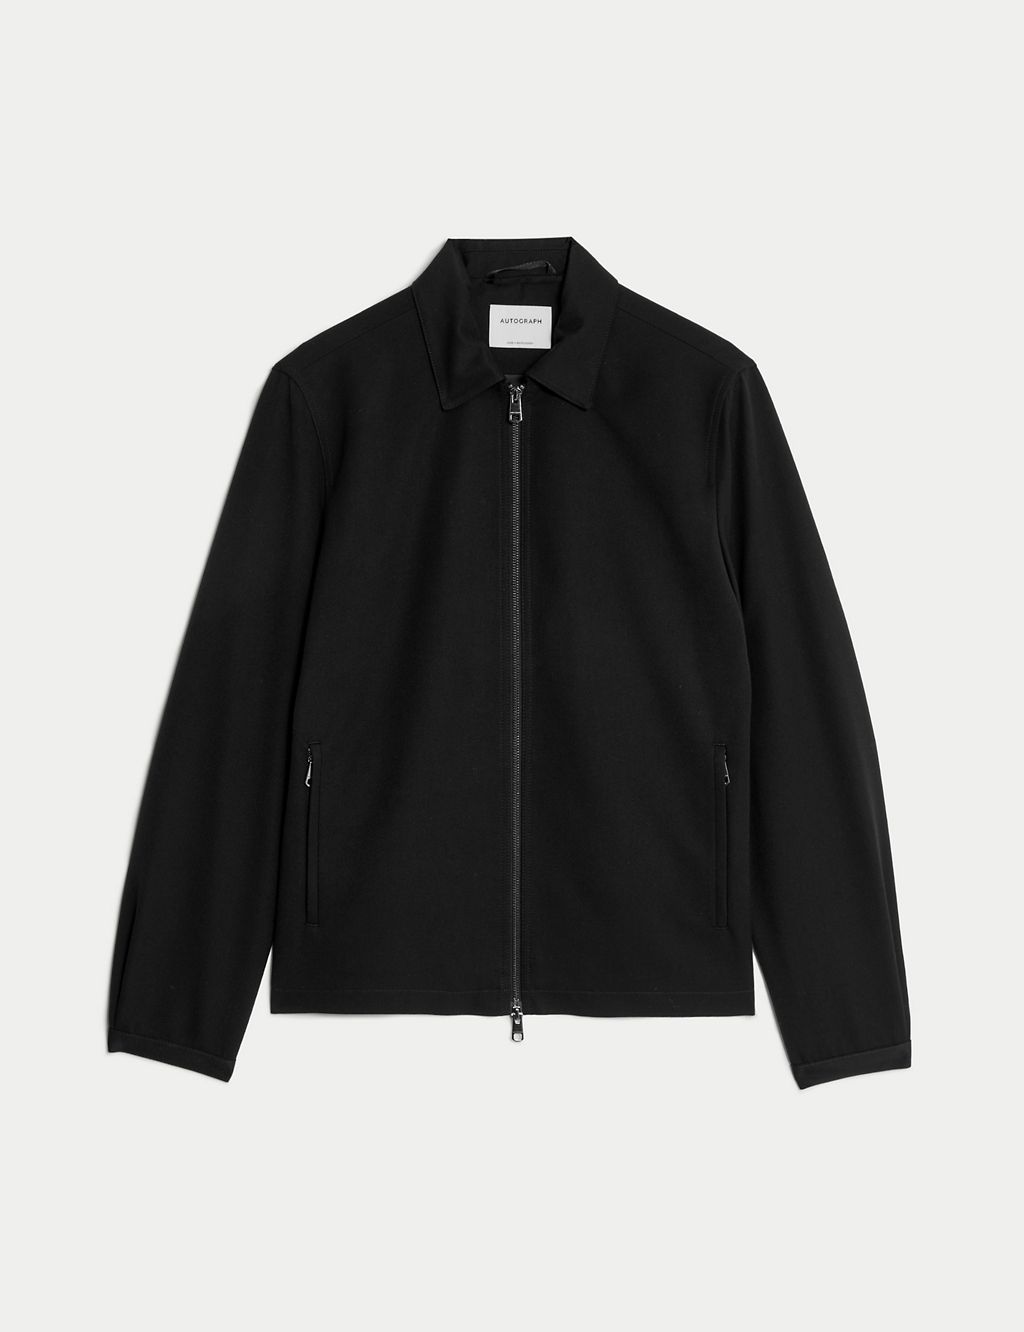 Harrington Jacket with Stormwear™ 1 of 7